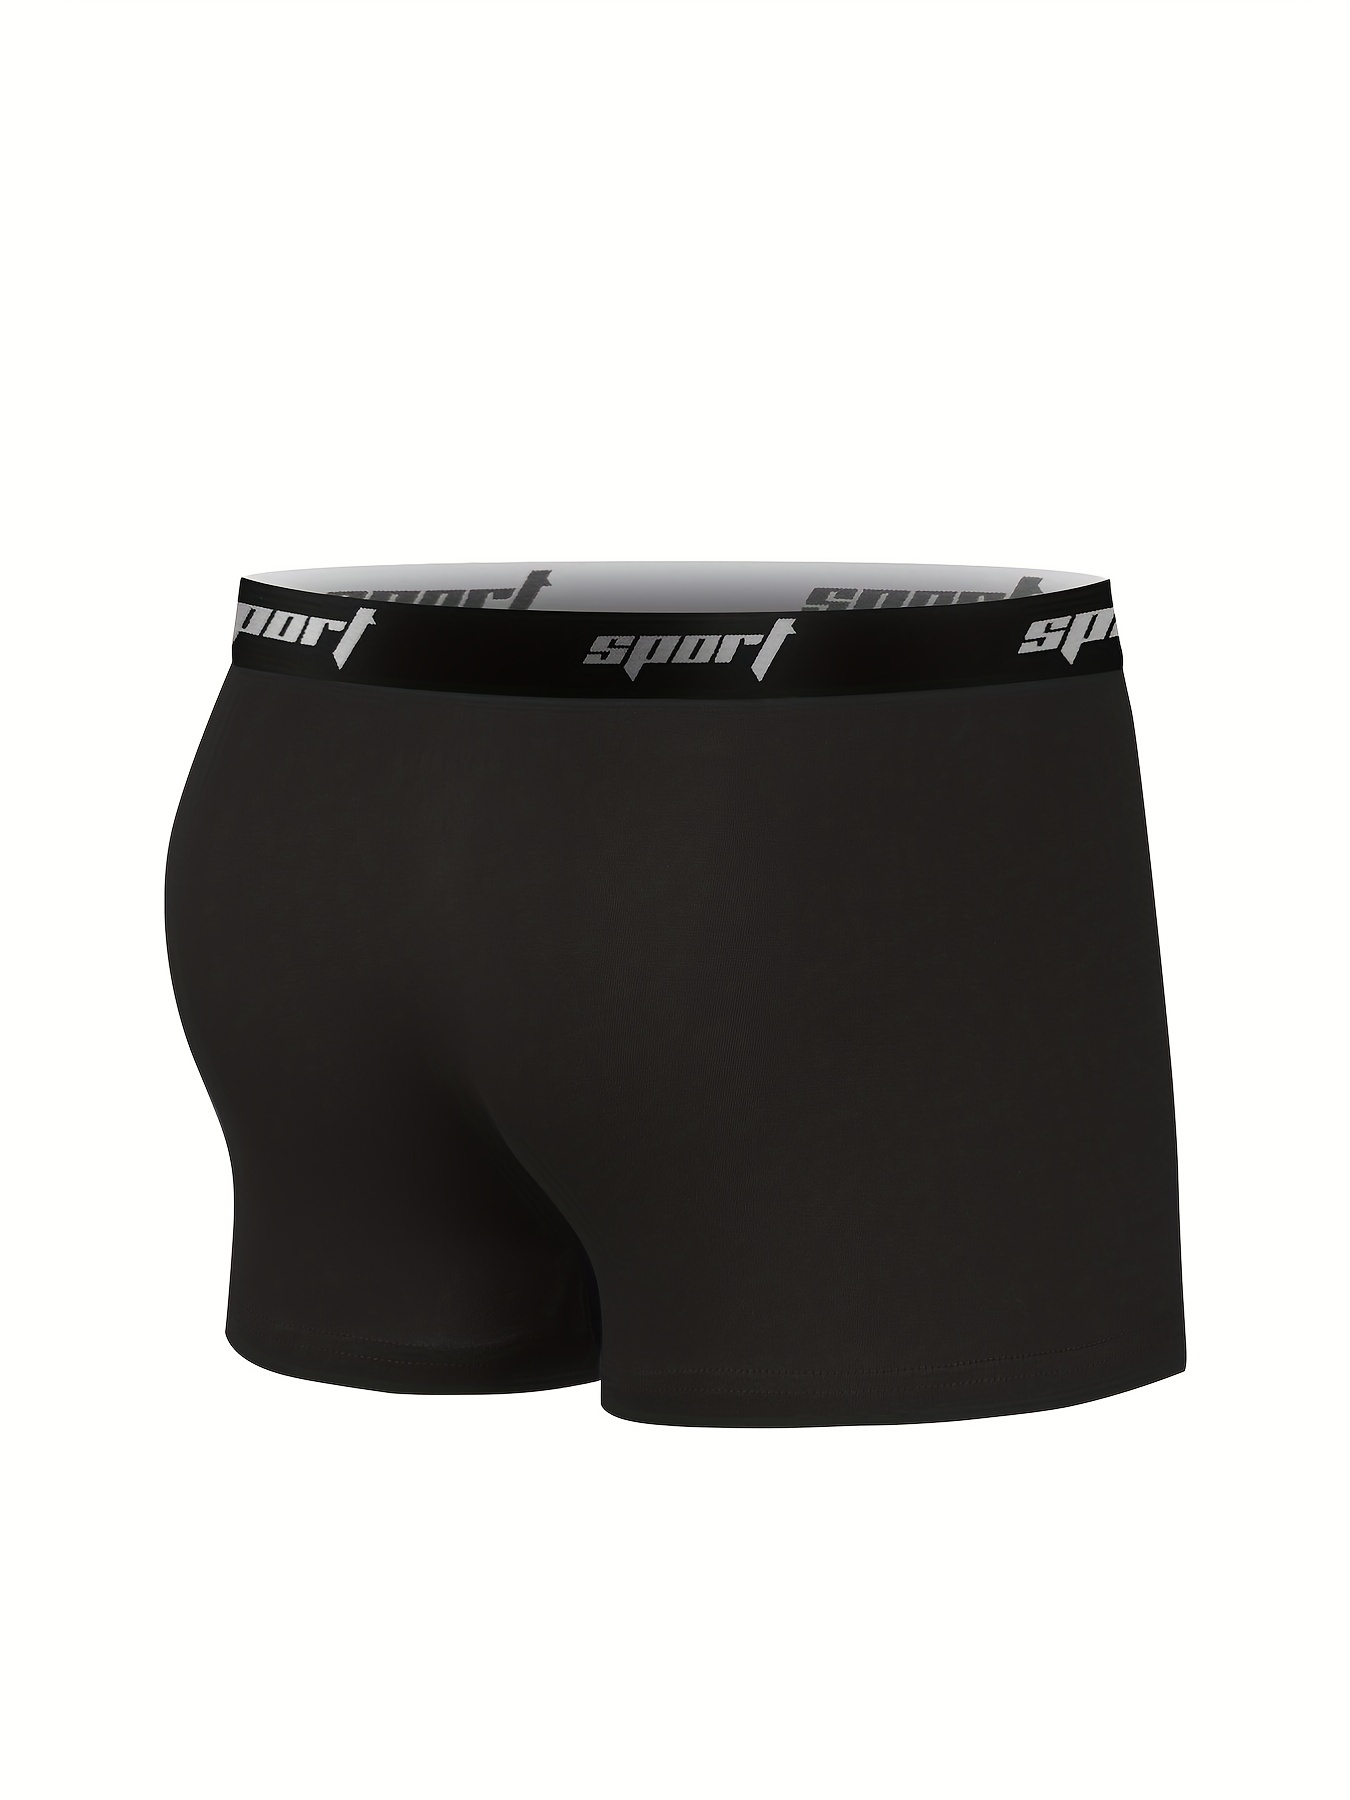 Spandex Calvin Klein Underwear, Type: Trunks